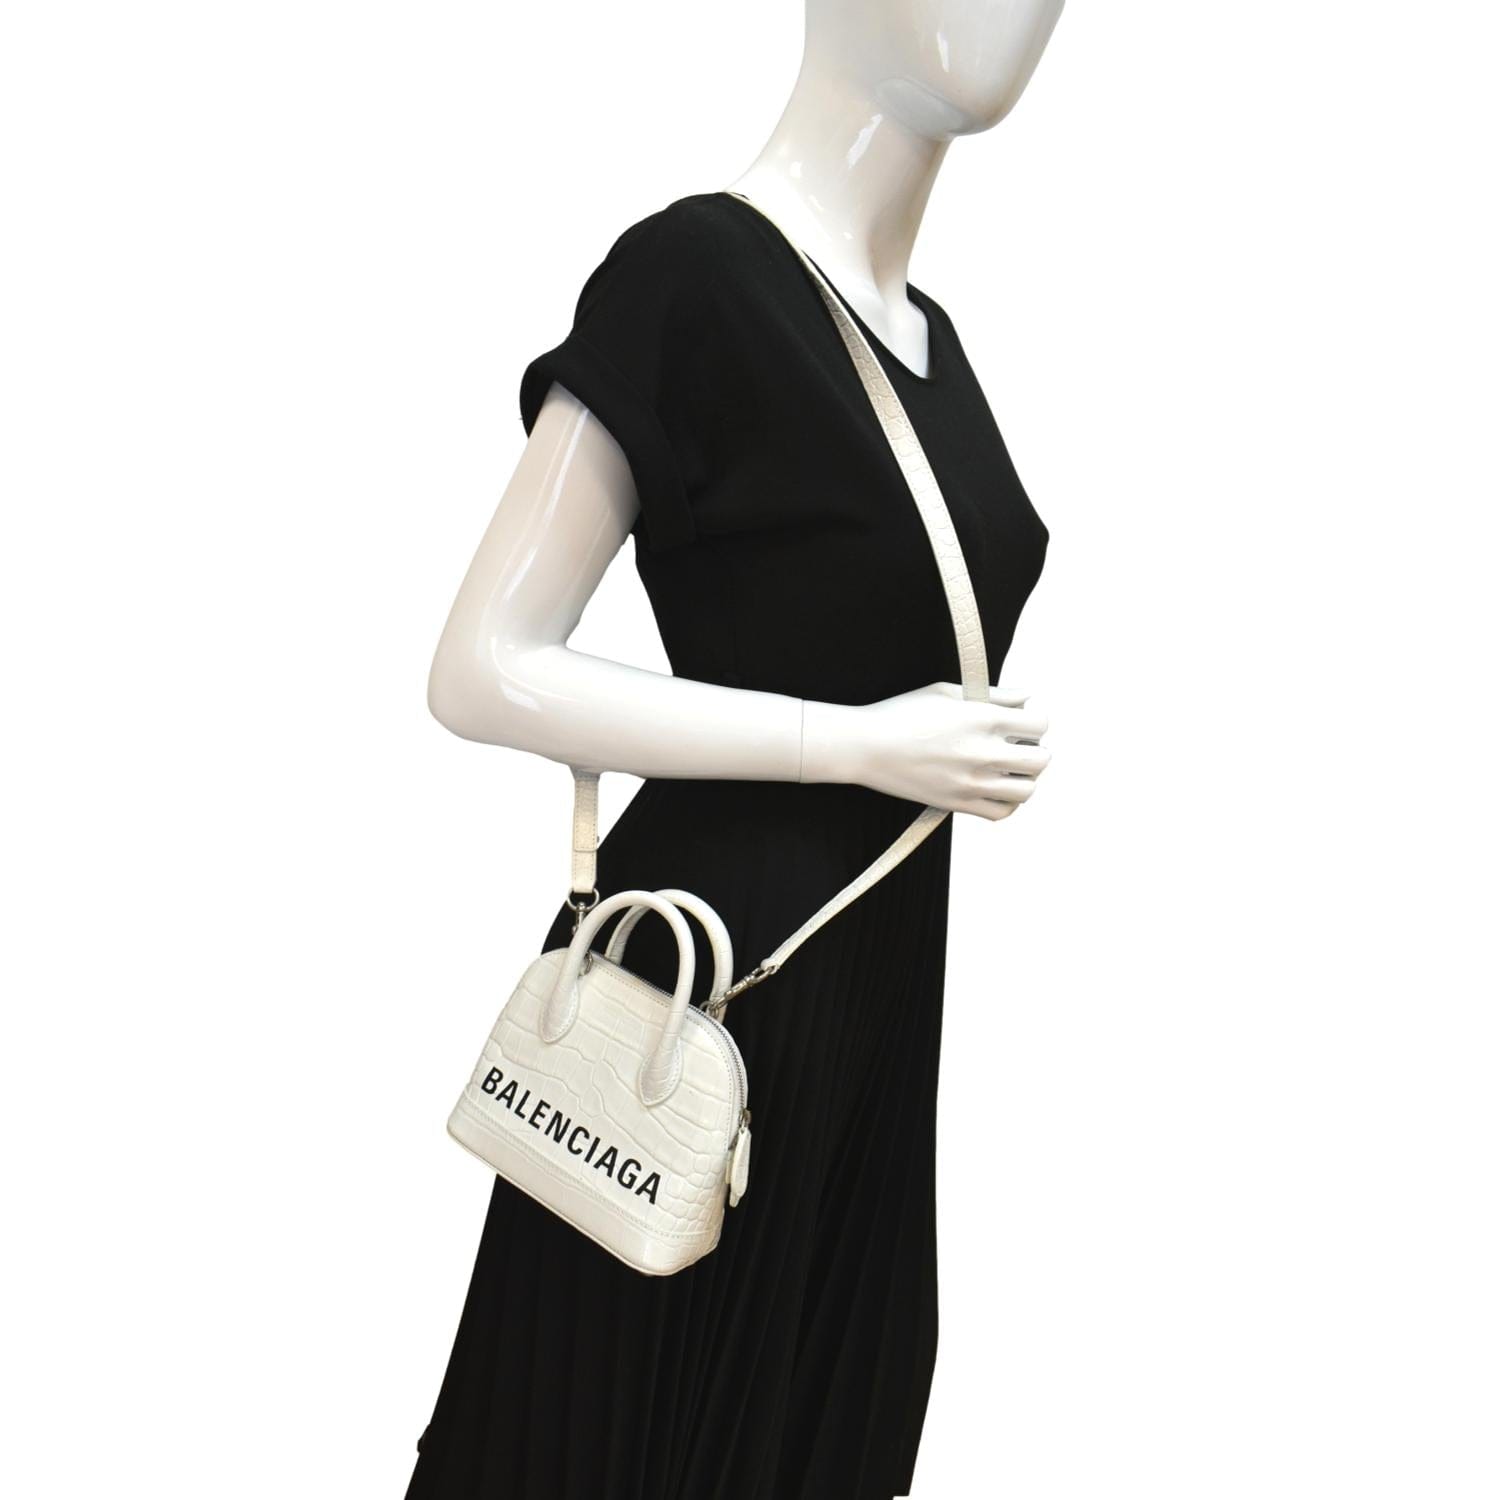 Balenciaga Ville Xxs Top Handle Bag in White